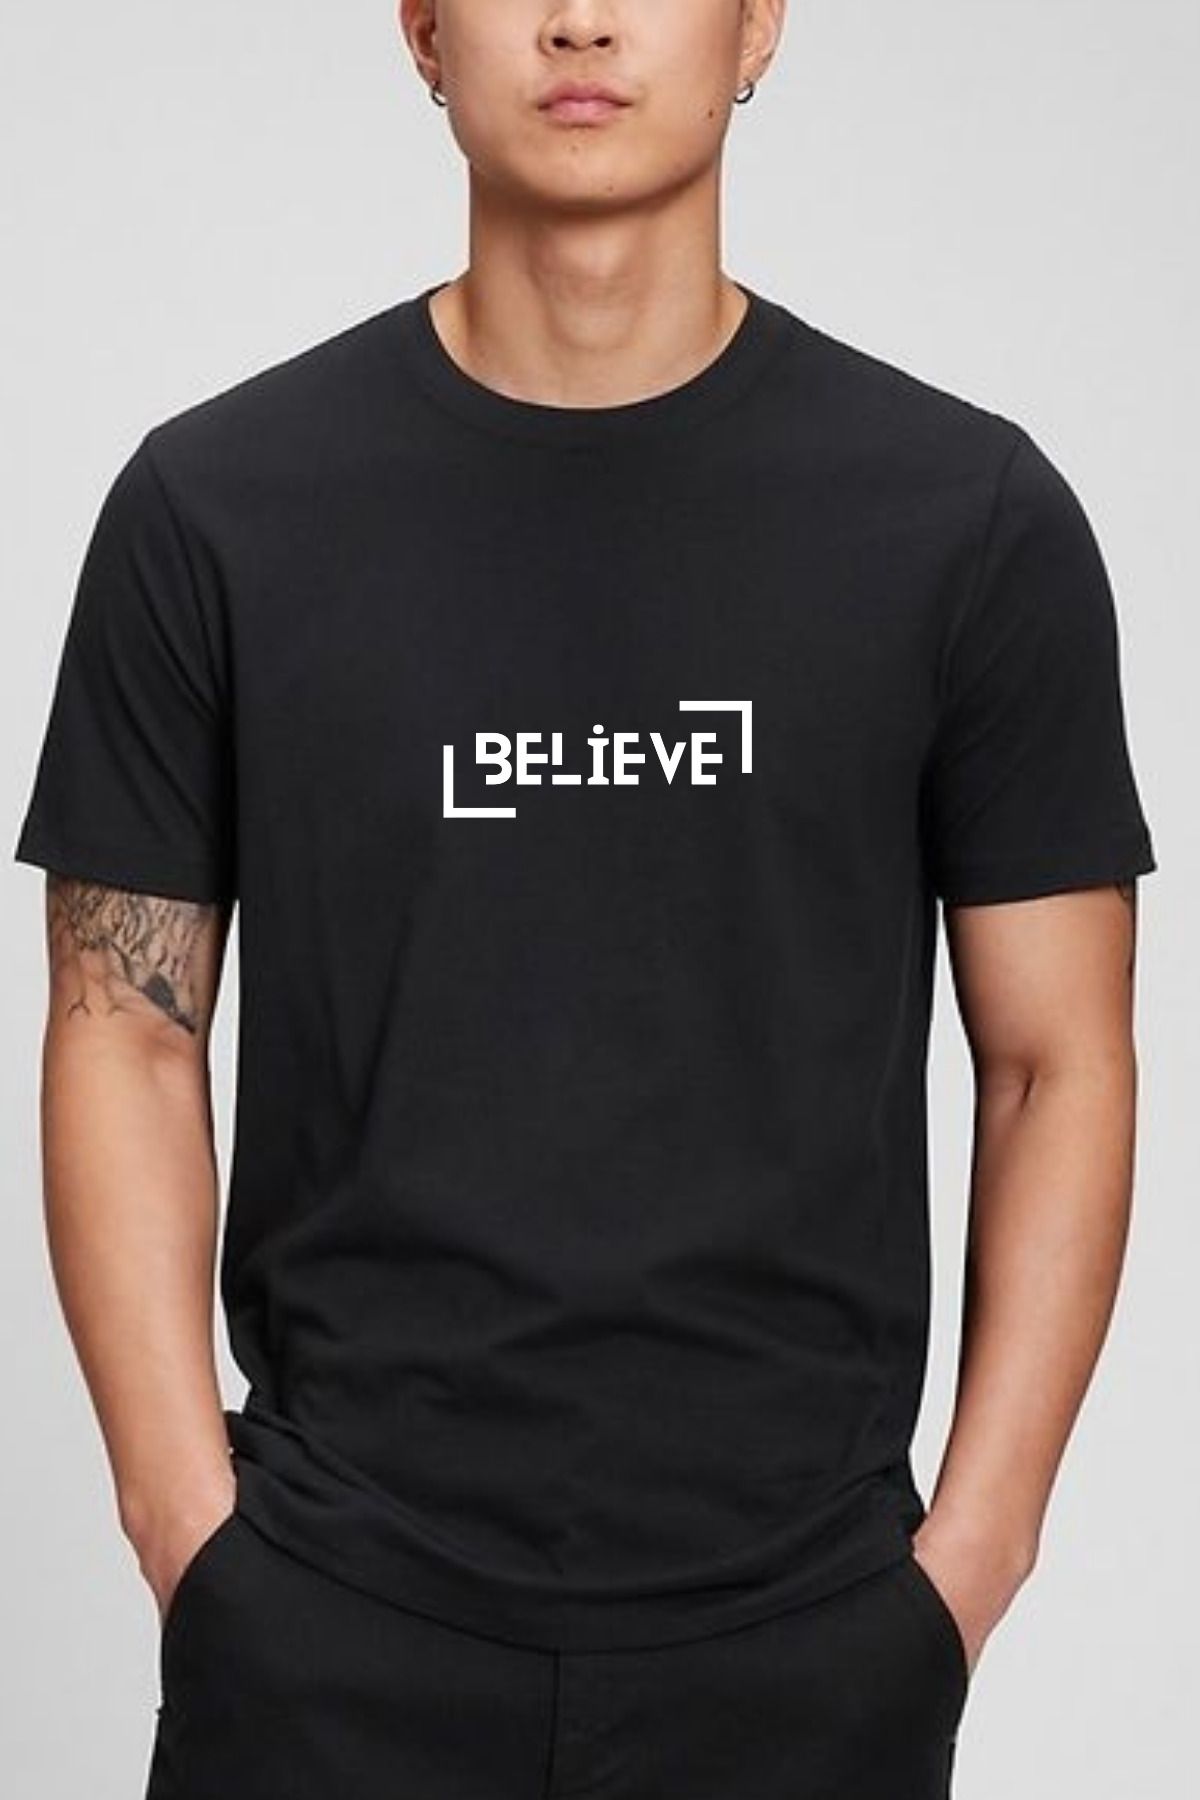 great peak est 2021 Erkek Tişört %100 Pamuk Believe Siyah Beyaz Basic T-shirt